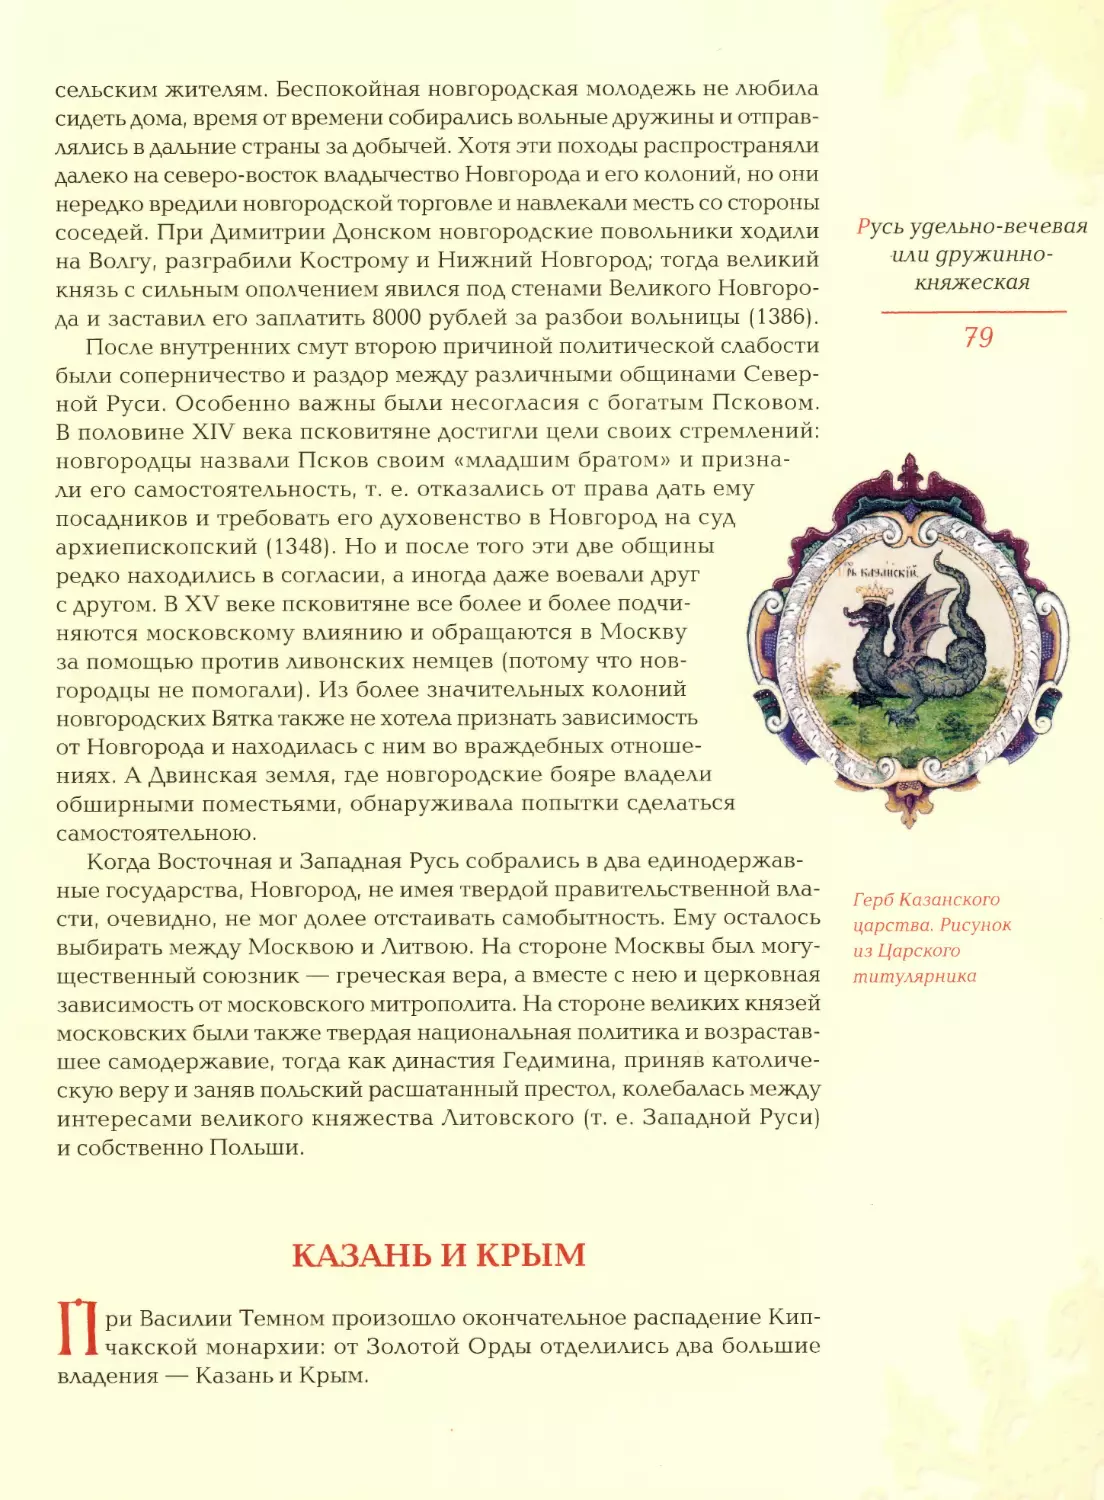 Казань и Крым